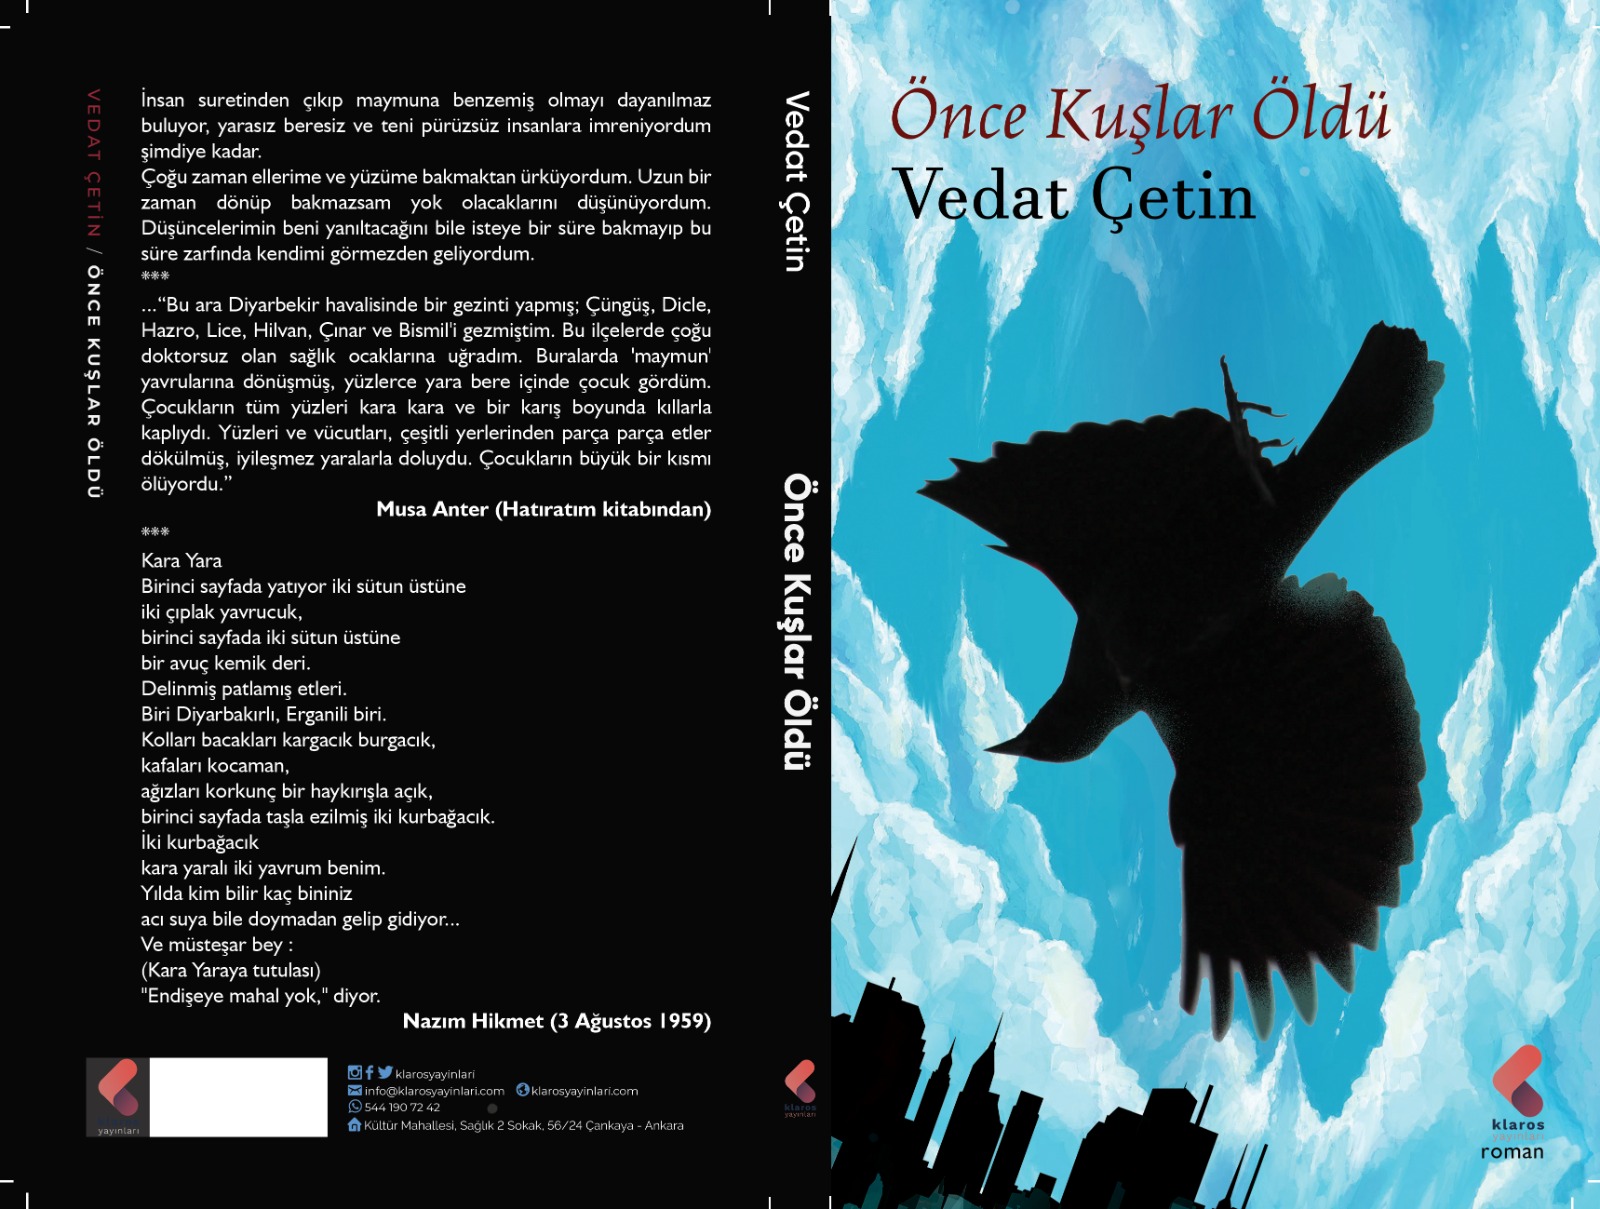 Yazar Vedat Çetin’in yeni kitabı ‘Önce Kuşlar Öldü’ çıktı